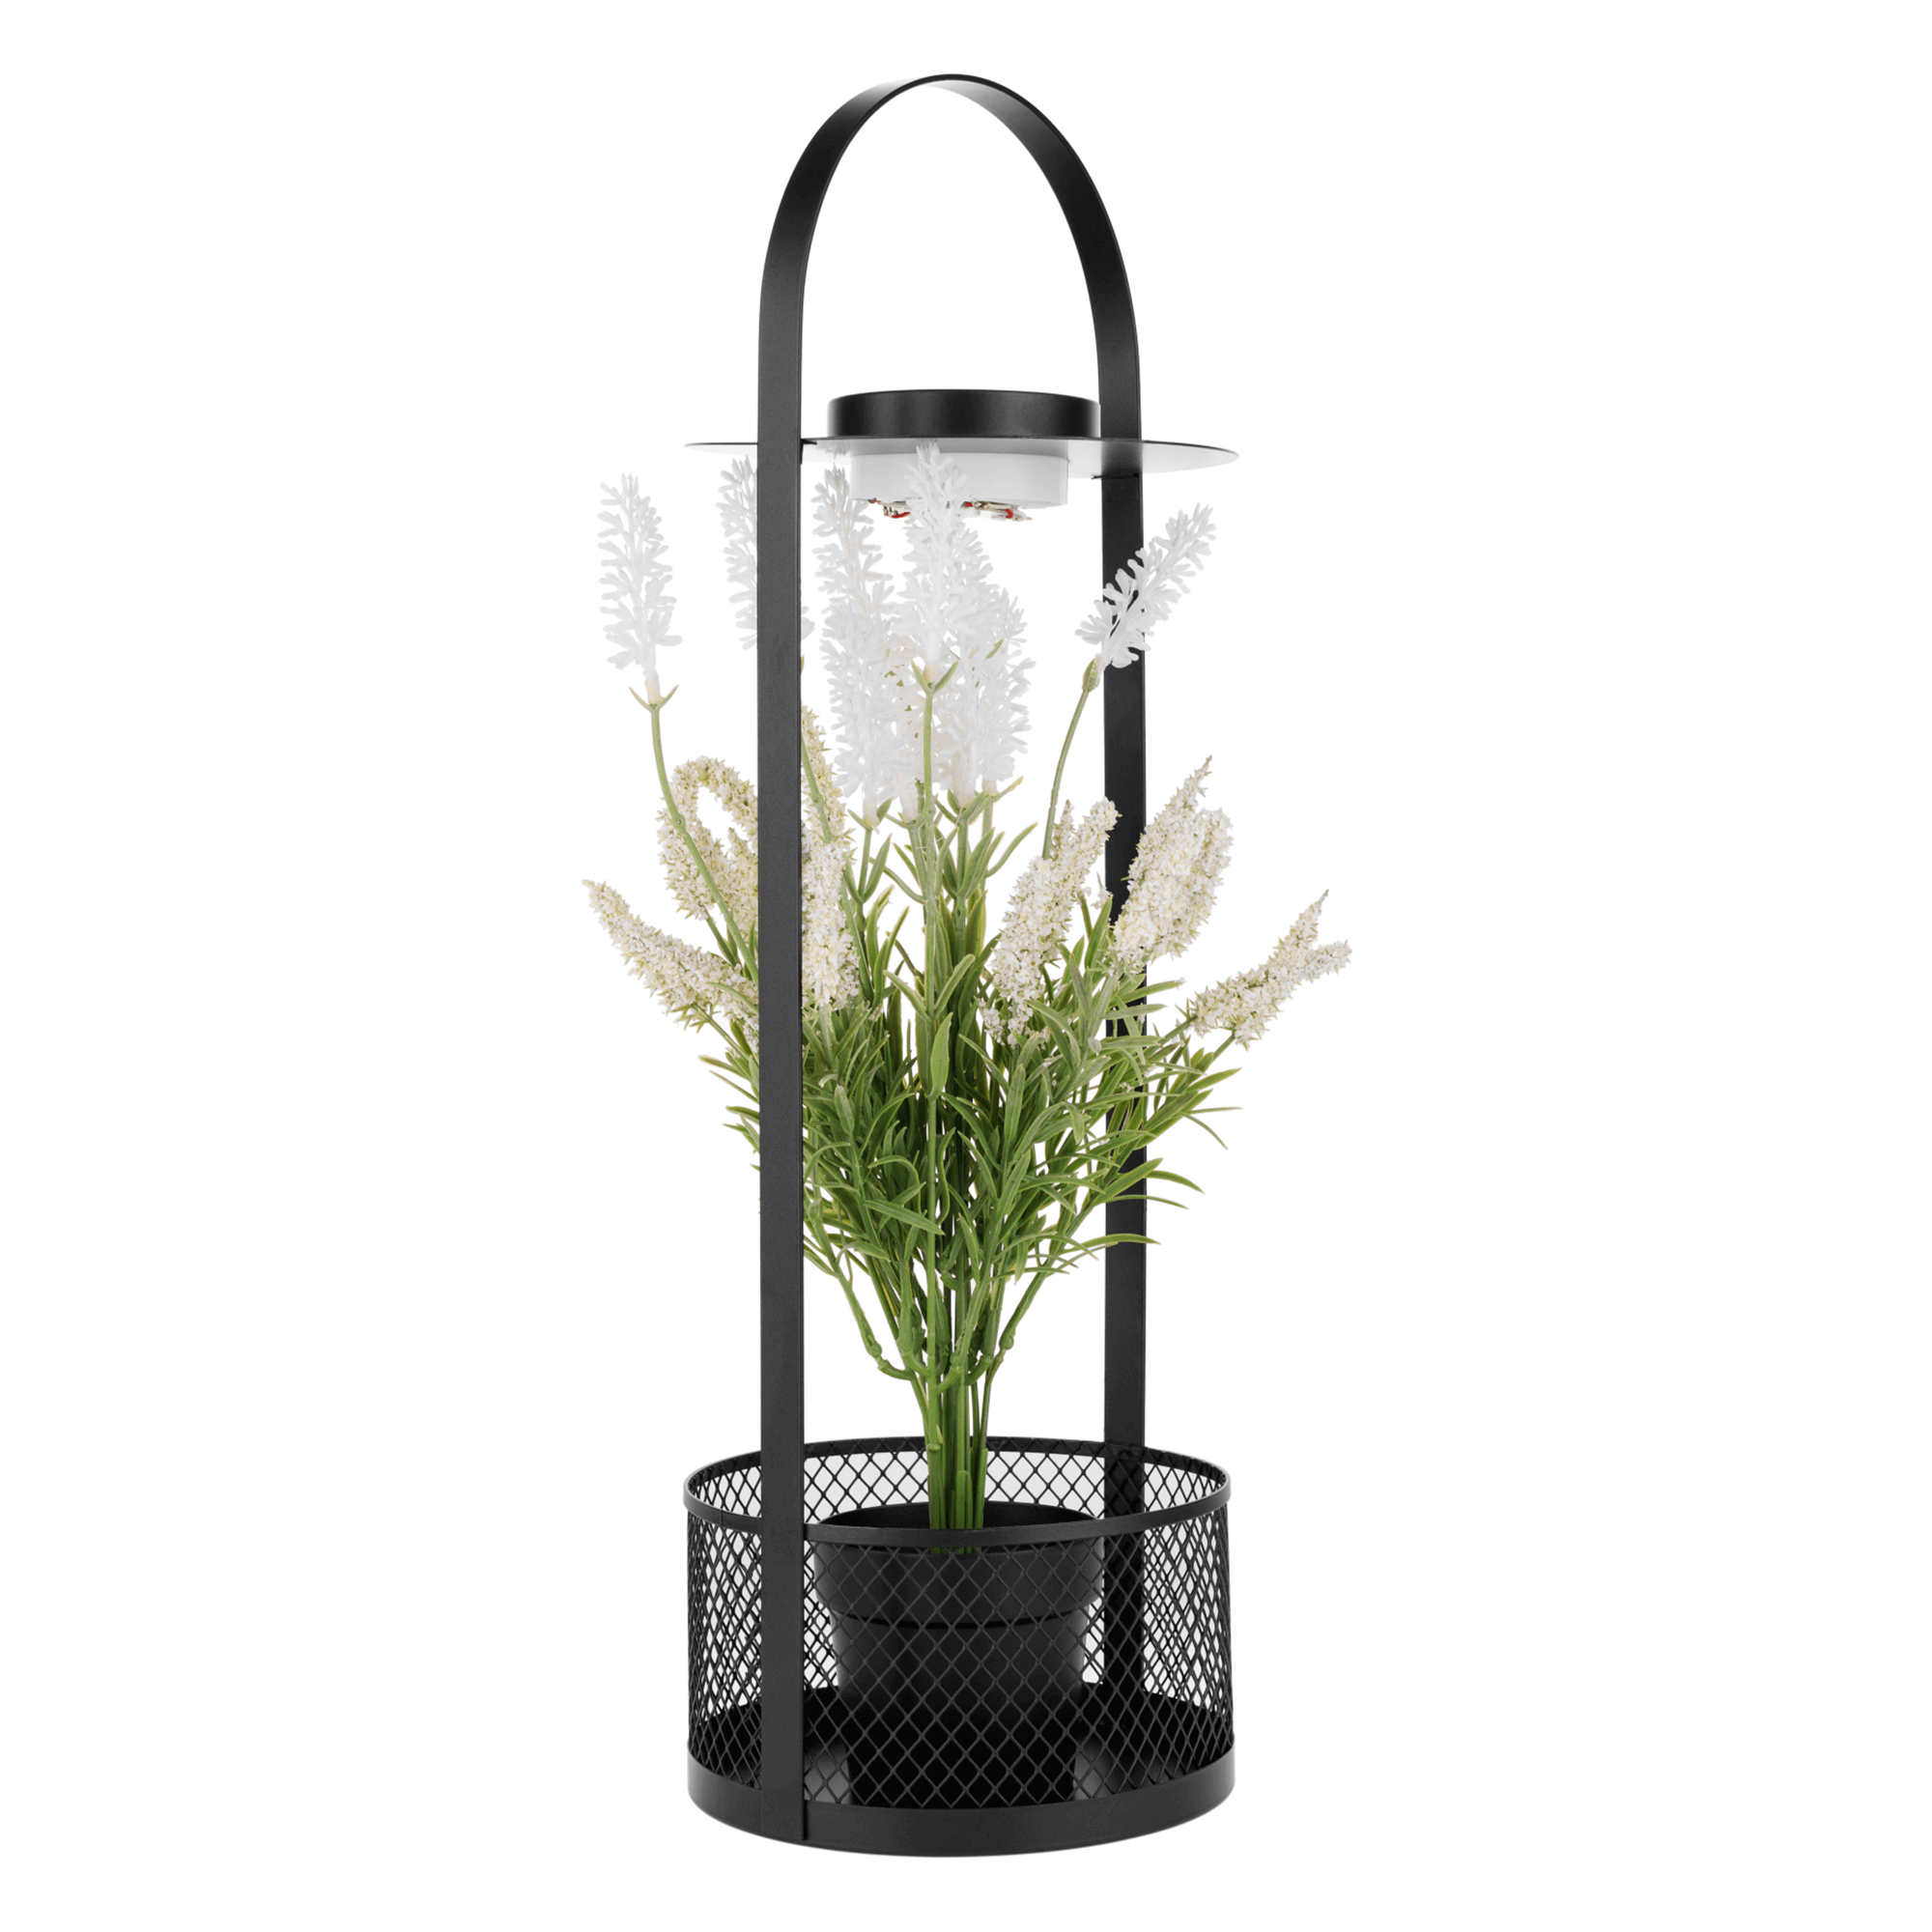 Dekoratív állvány virágcsereppel, LED világítás, 50 cm, művirággal, VELOM TYP 1